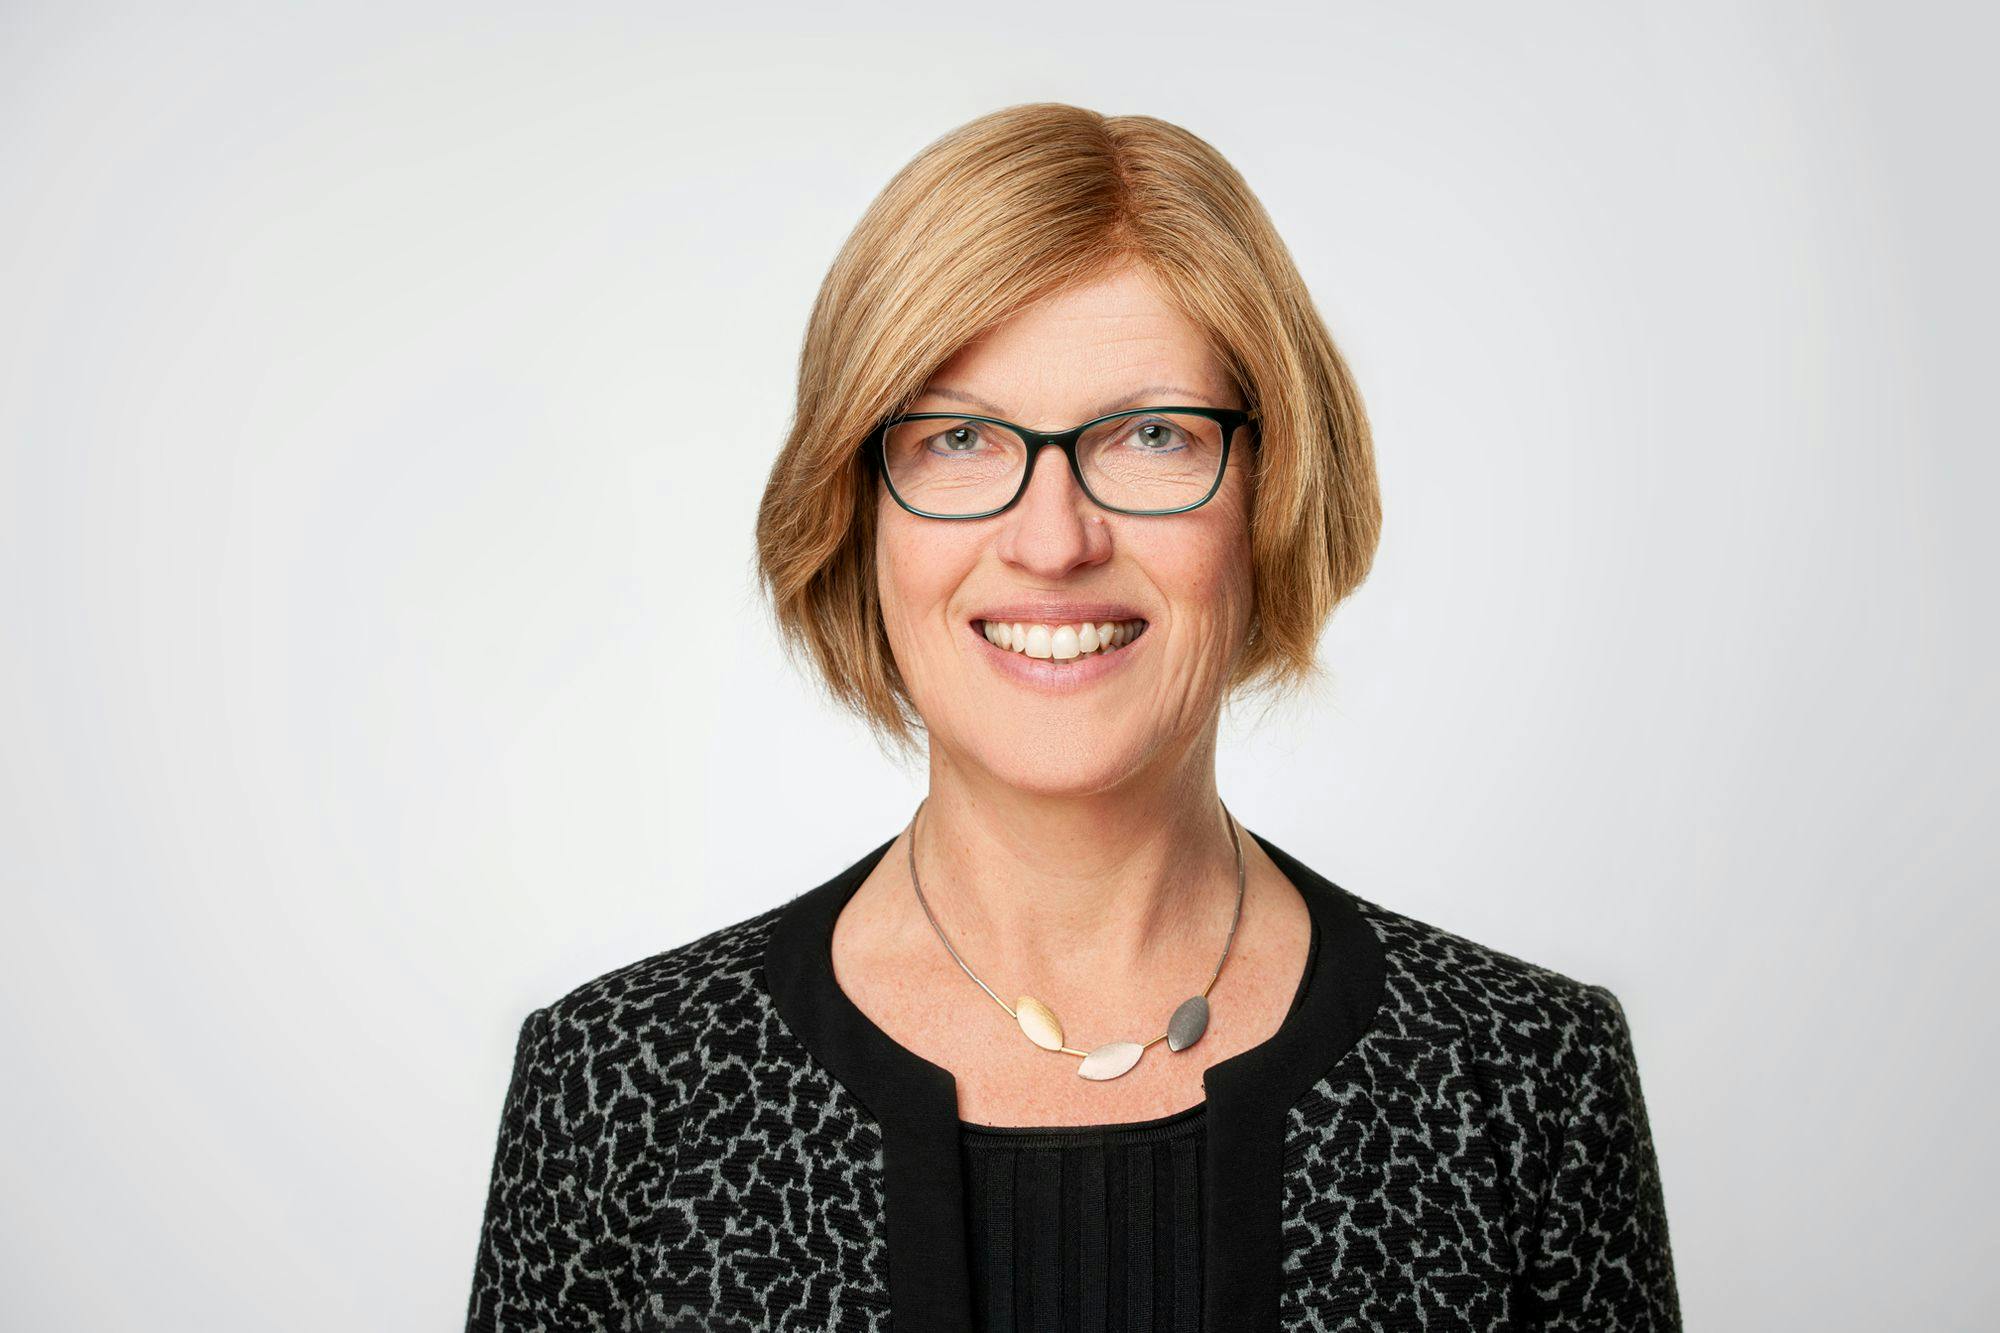 Dr. Nicole Faust
CEO
Cevec Pharmaceuticals